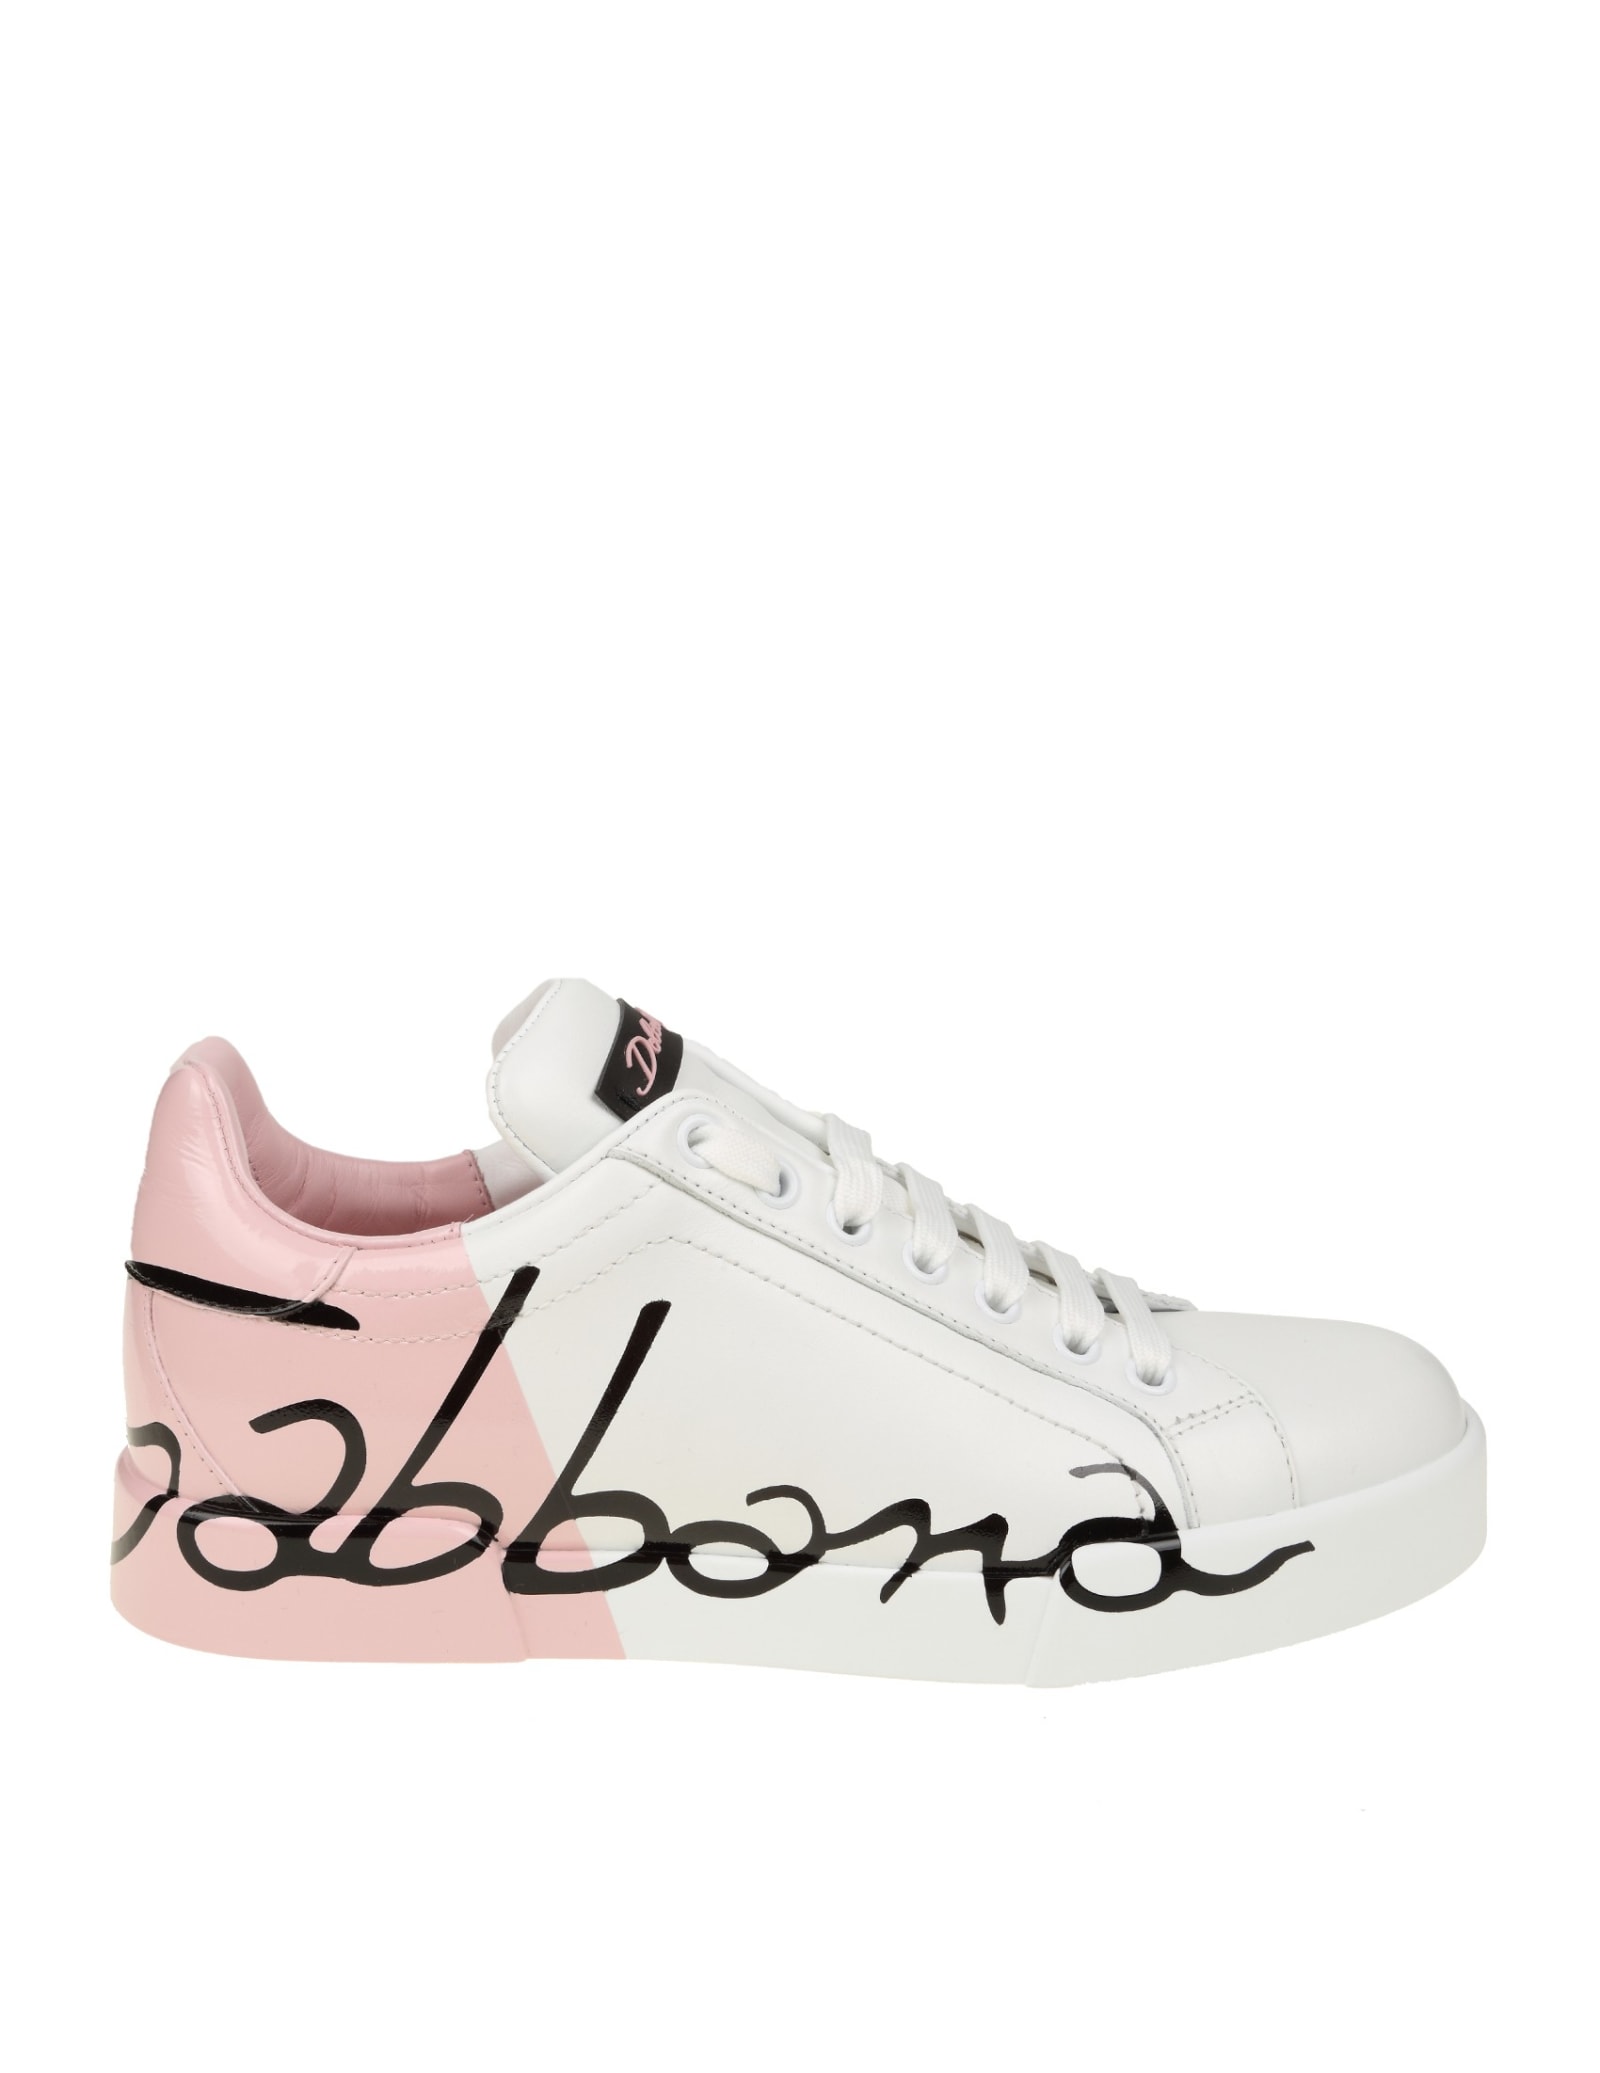 Dolce & Gabbana Portofino Sneakers In Leather